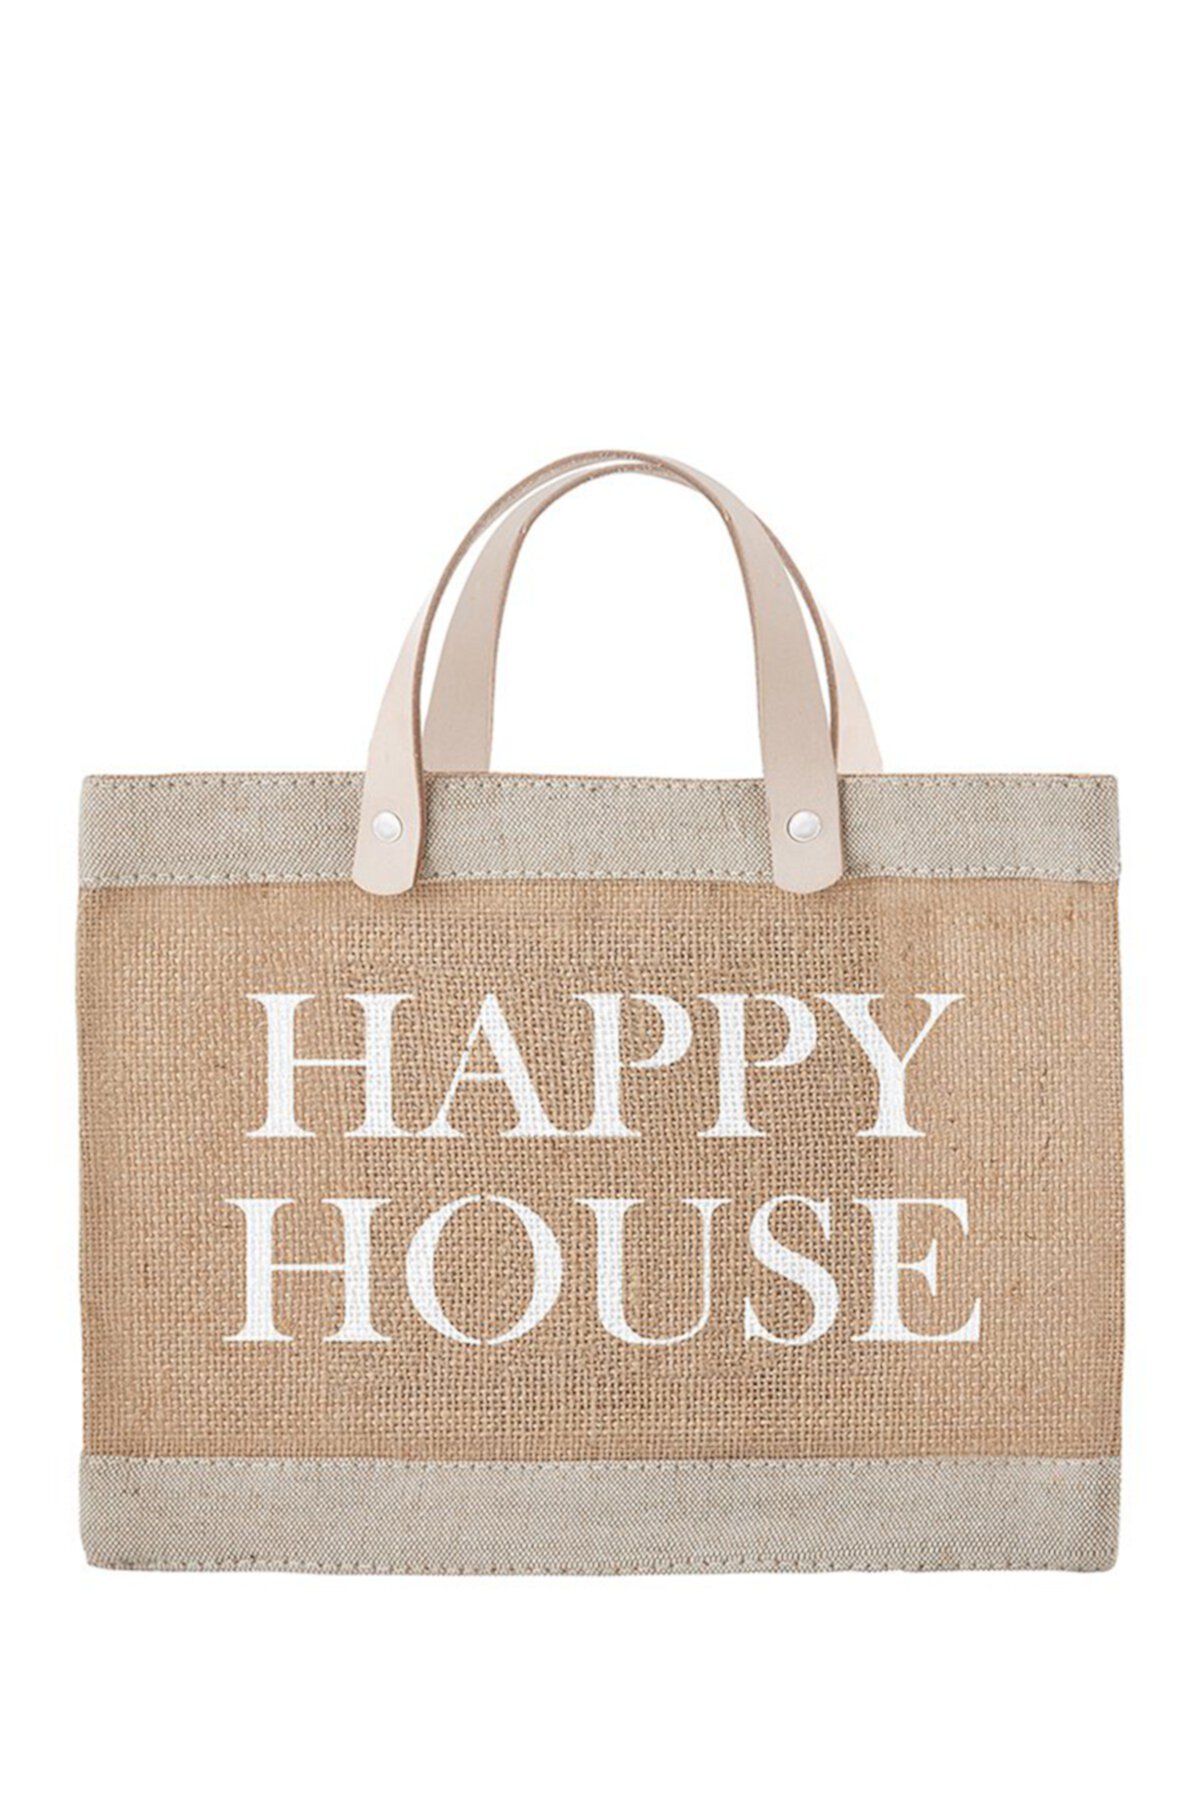 Happy house me. Сумка House. Пакет Happy House. Хэппи Хаус сумка. Сумка House brand.